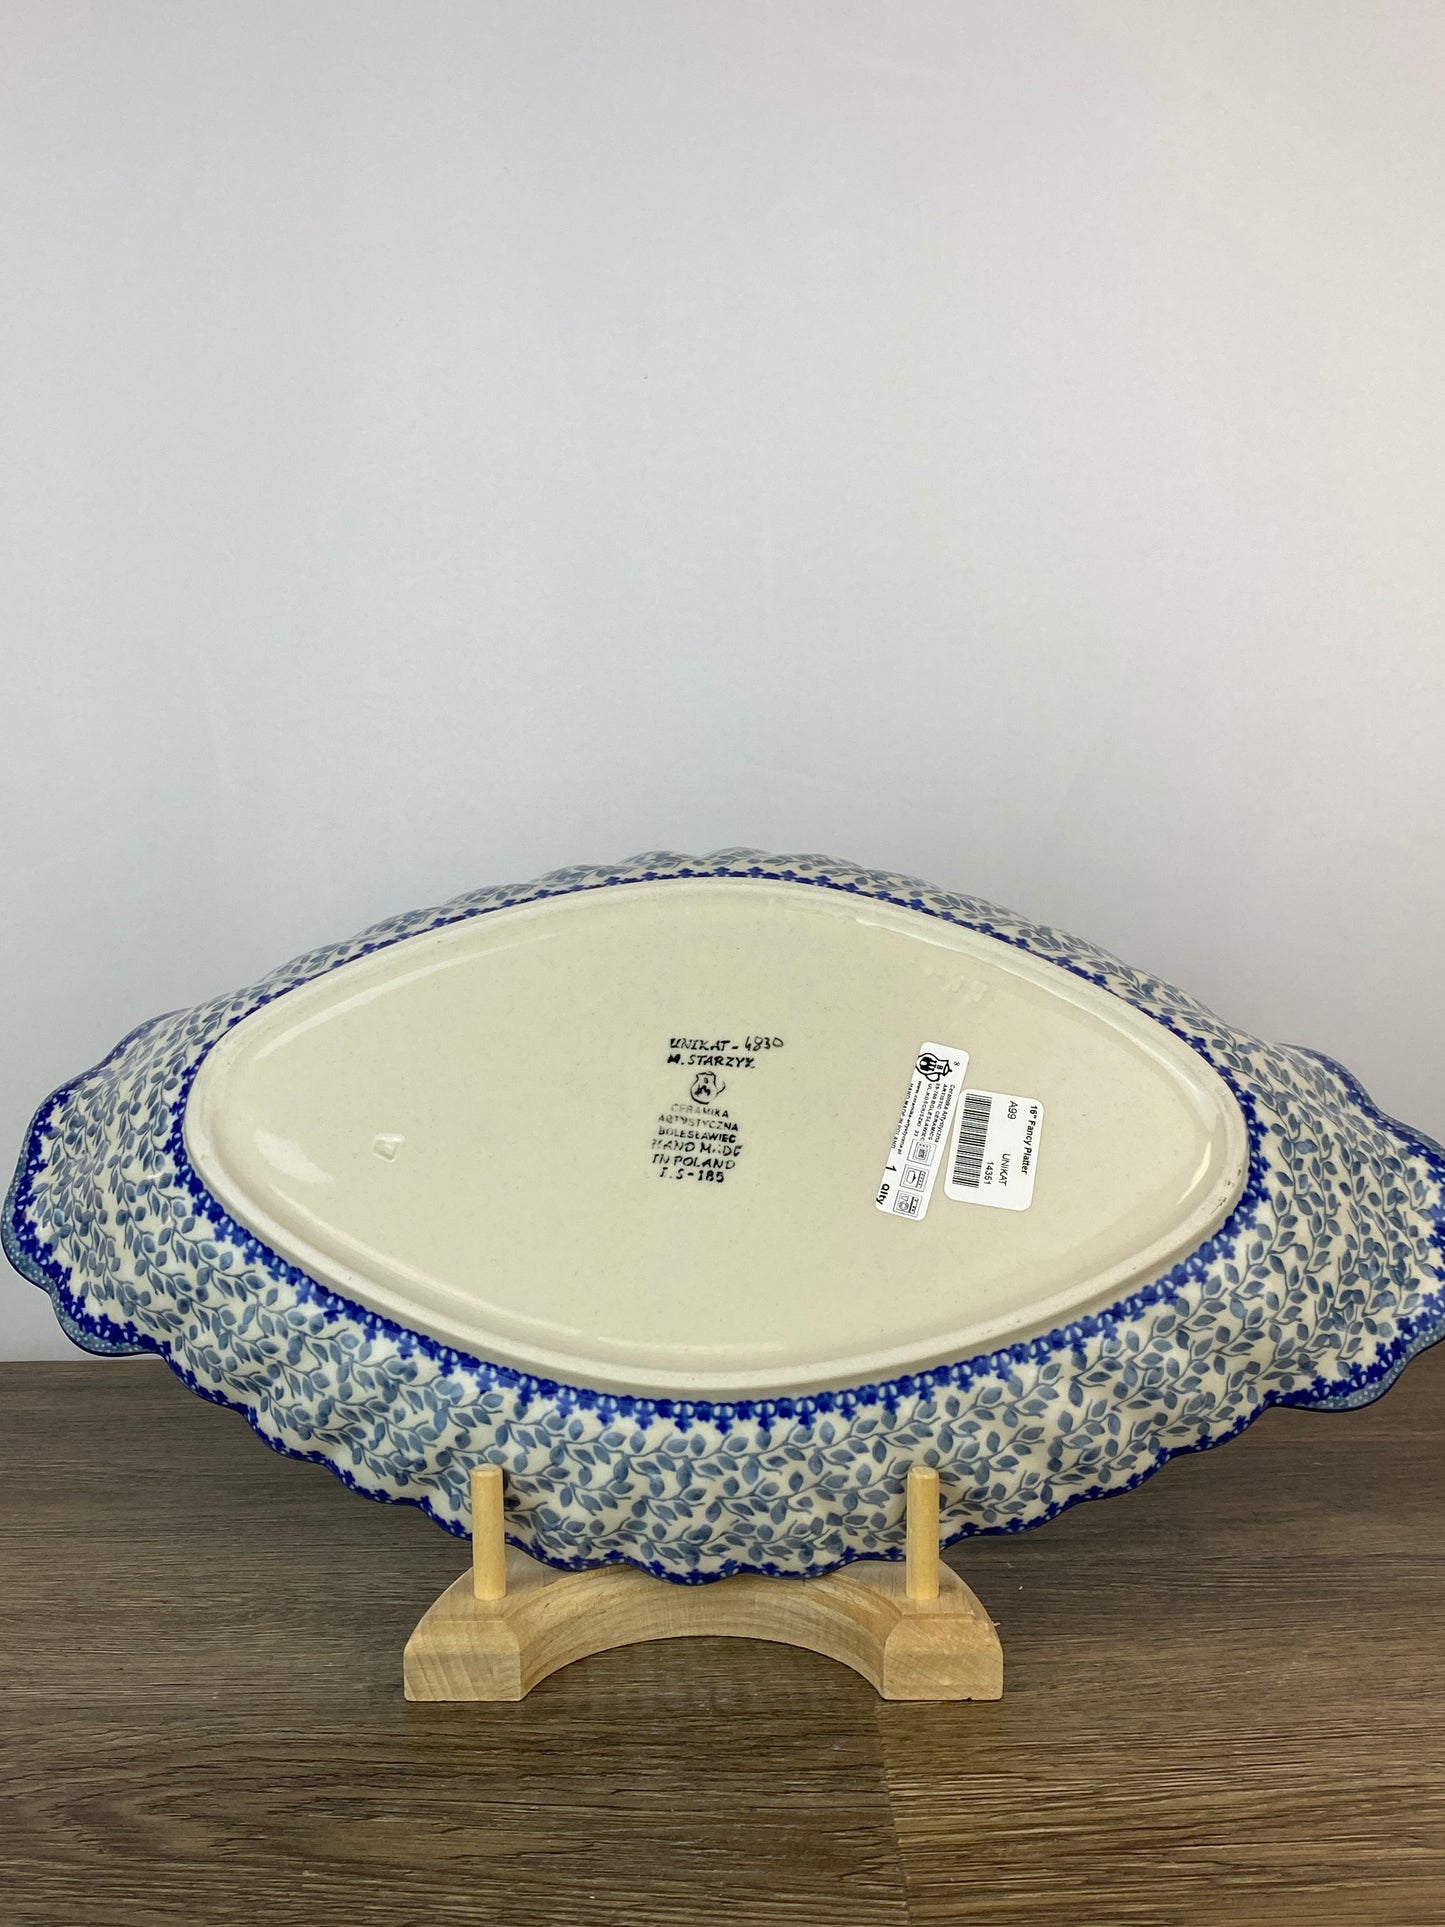 Unikat Fancy Platter - Shape A99 - Pattern U4830